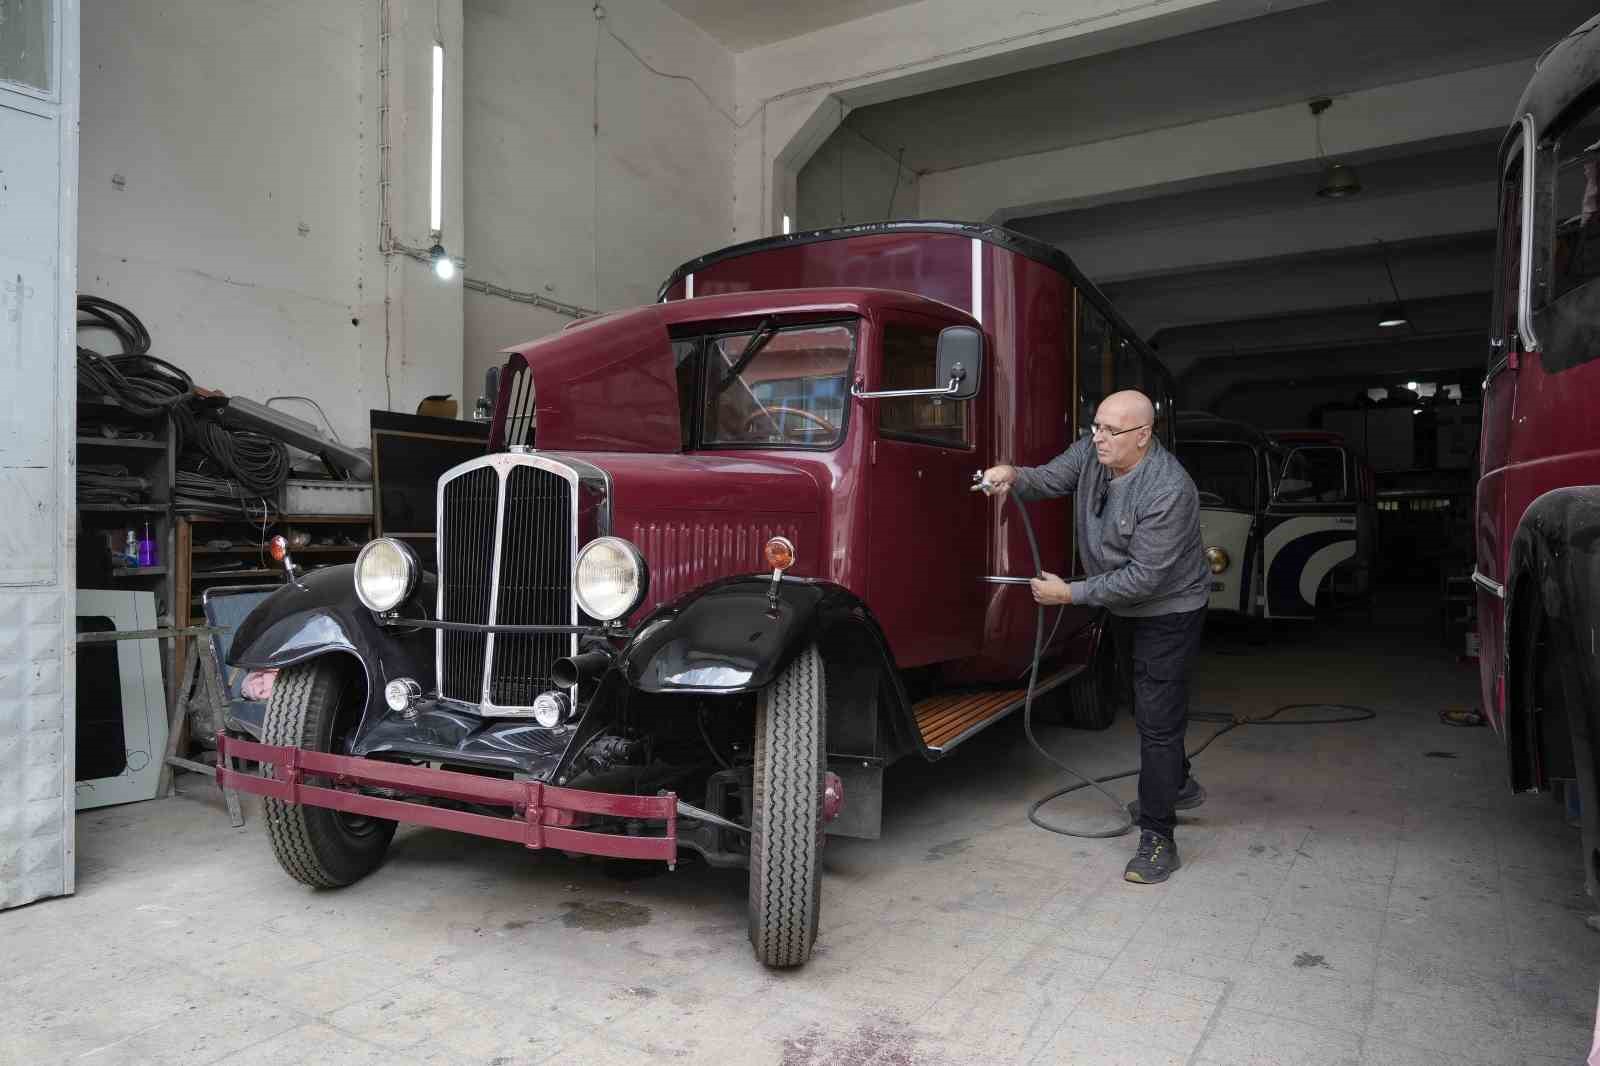 ozel yillardir hurdadaydi 1938 model otobusun son hali goz kamastirdi 3